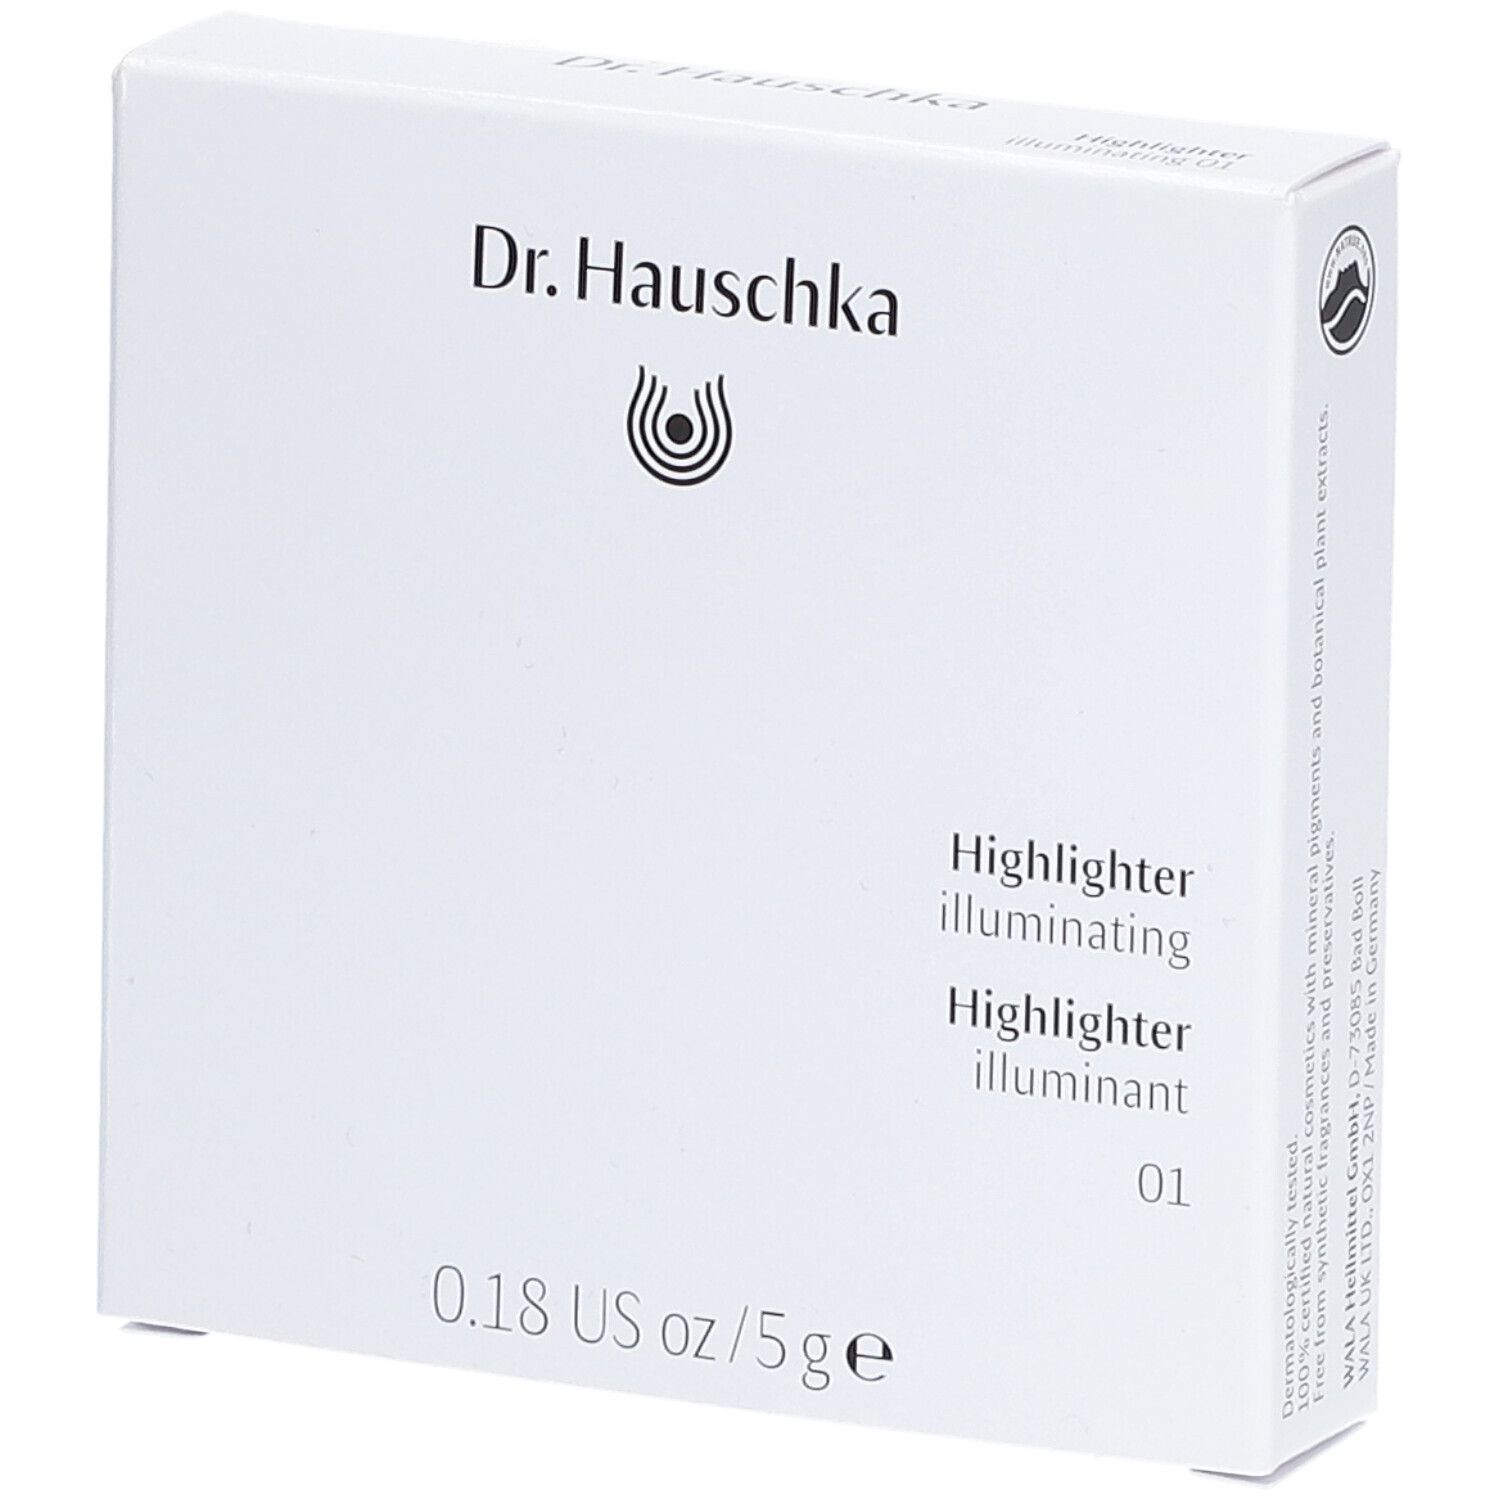 Dr. Hauschka Highlighter 01 illuminating 5g